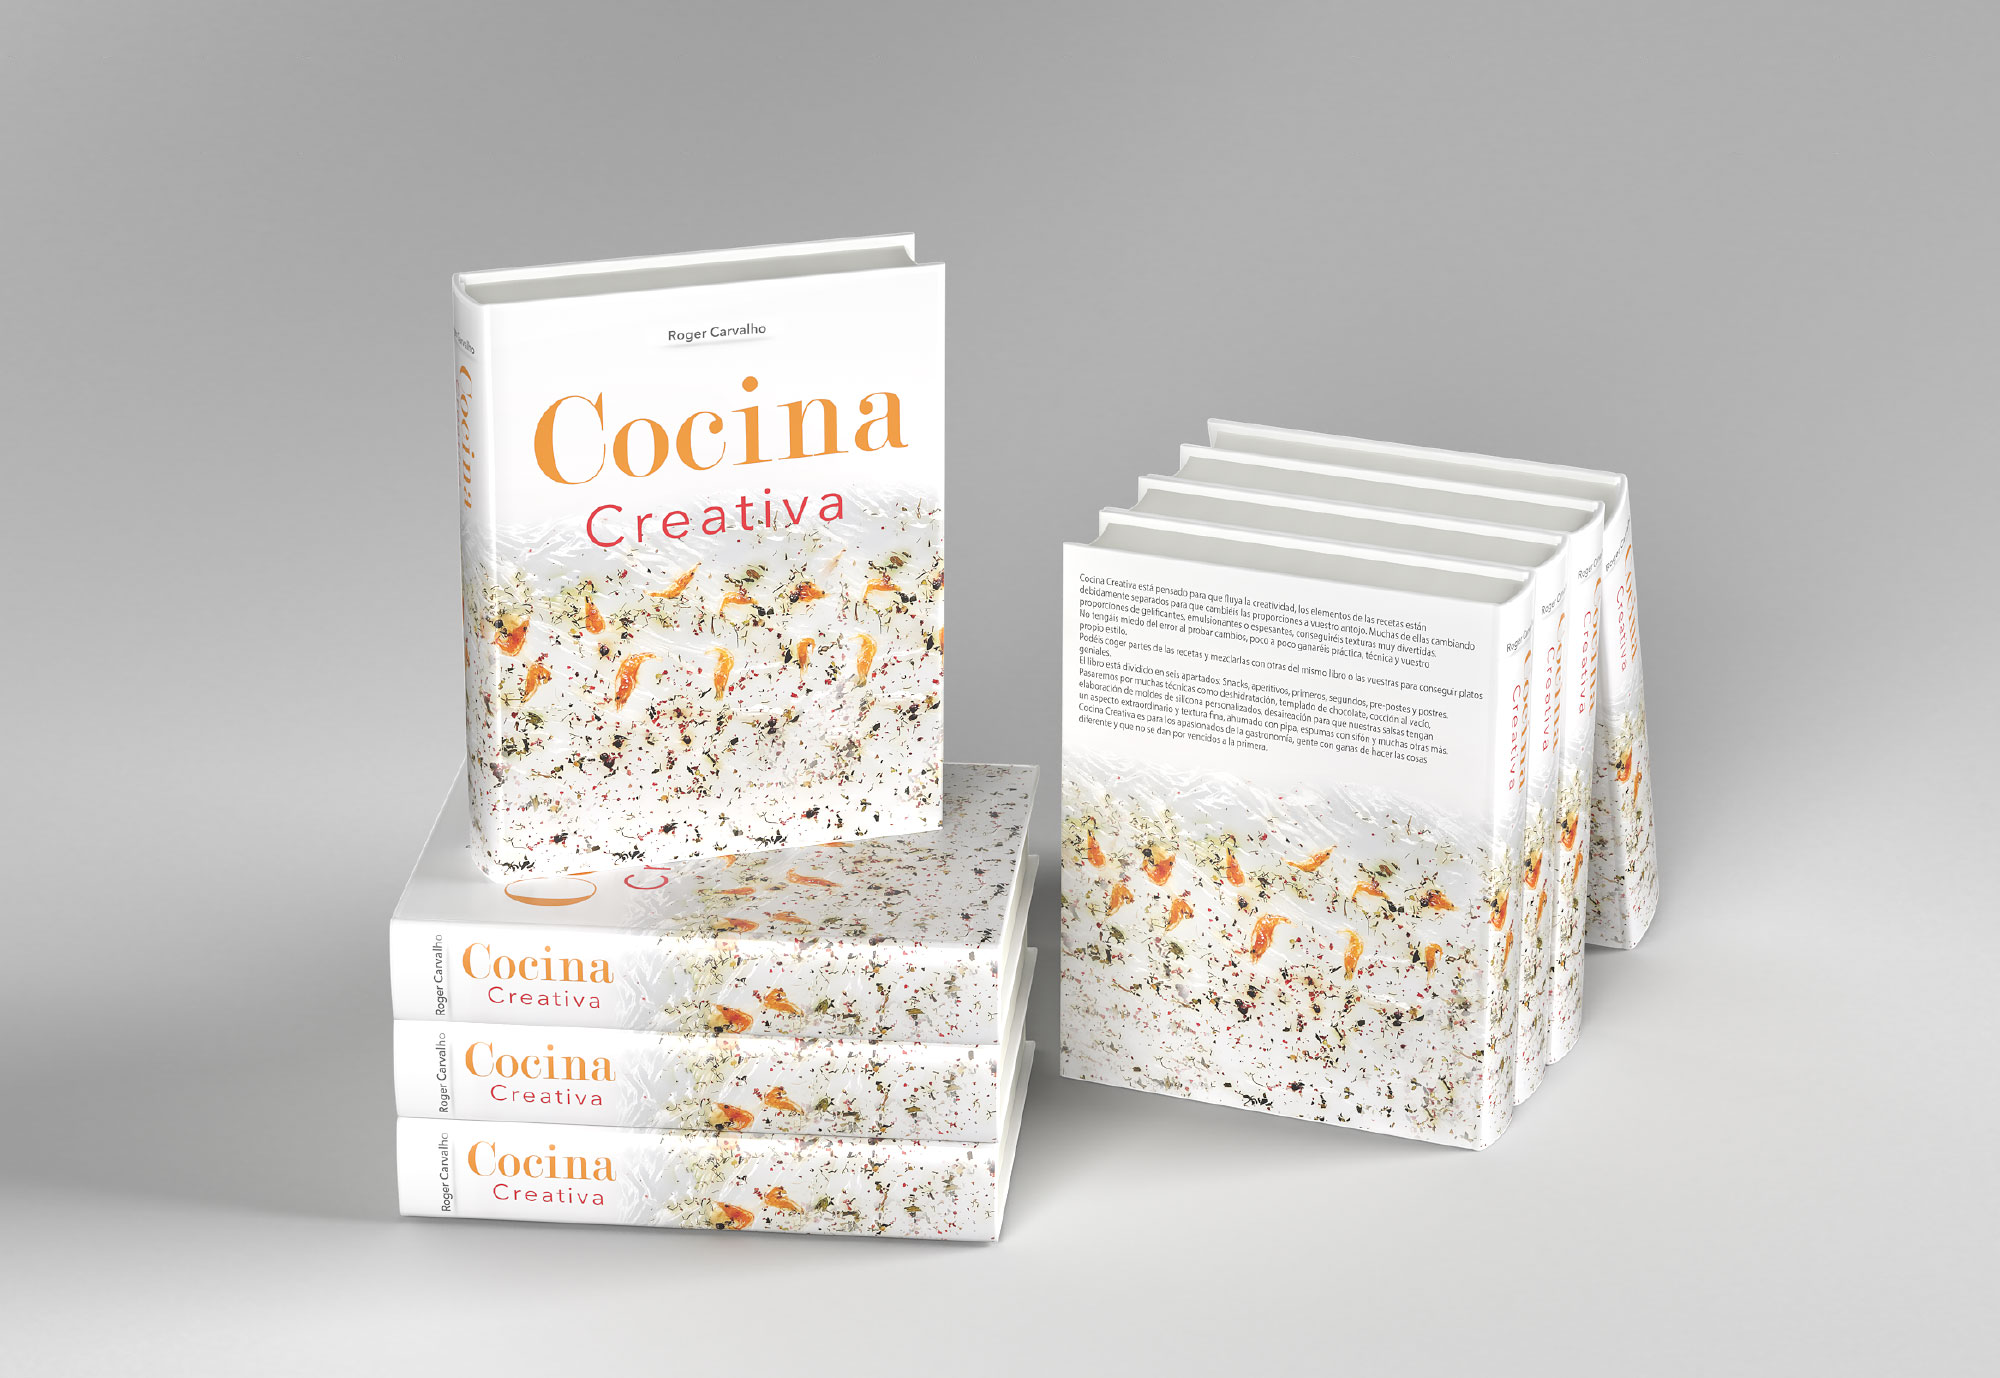 Libro Cocina Creativa del Chef Roger Carvalho